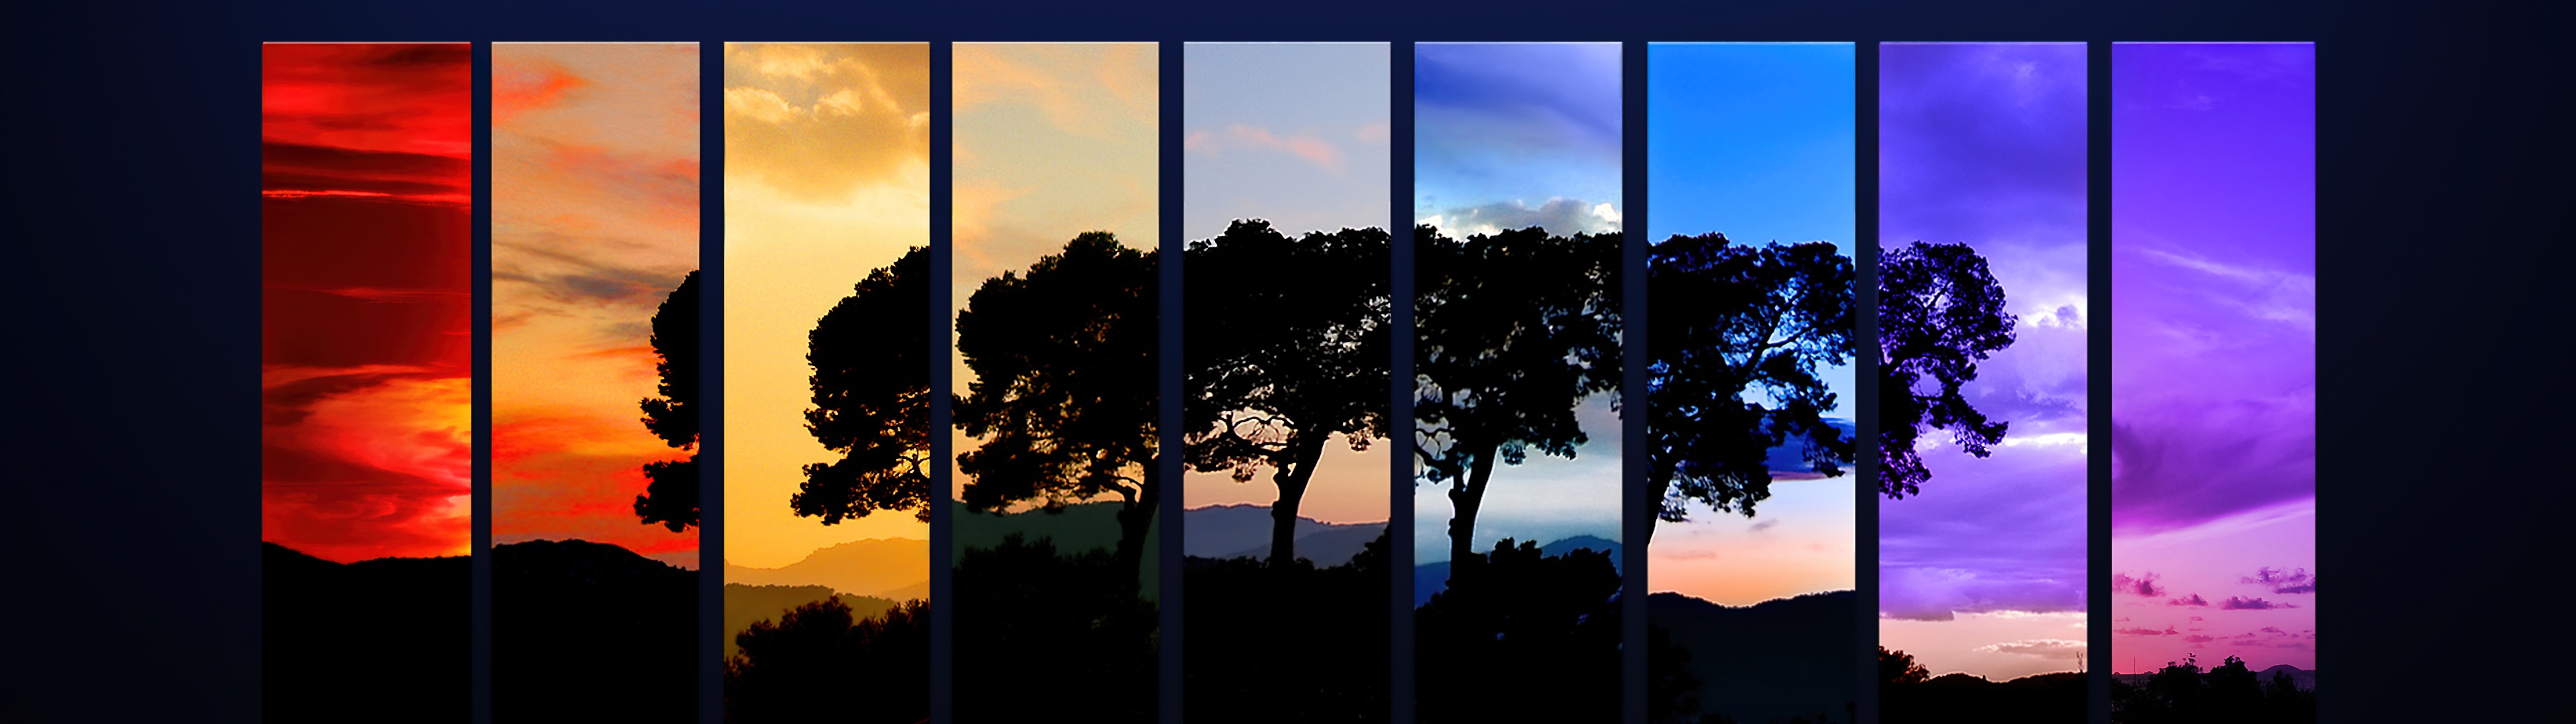 Tree Wallpaper 4K, Sunset, Daylight, Nature, #6054